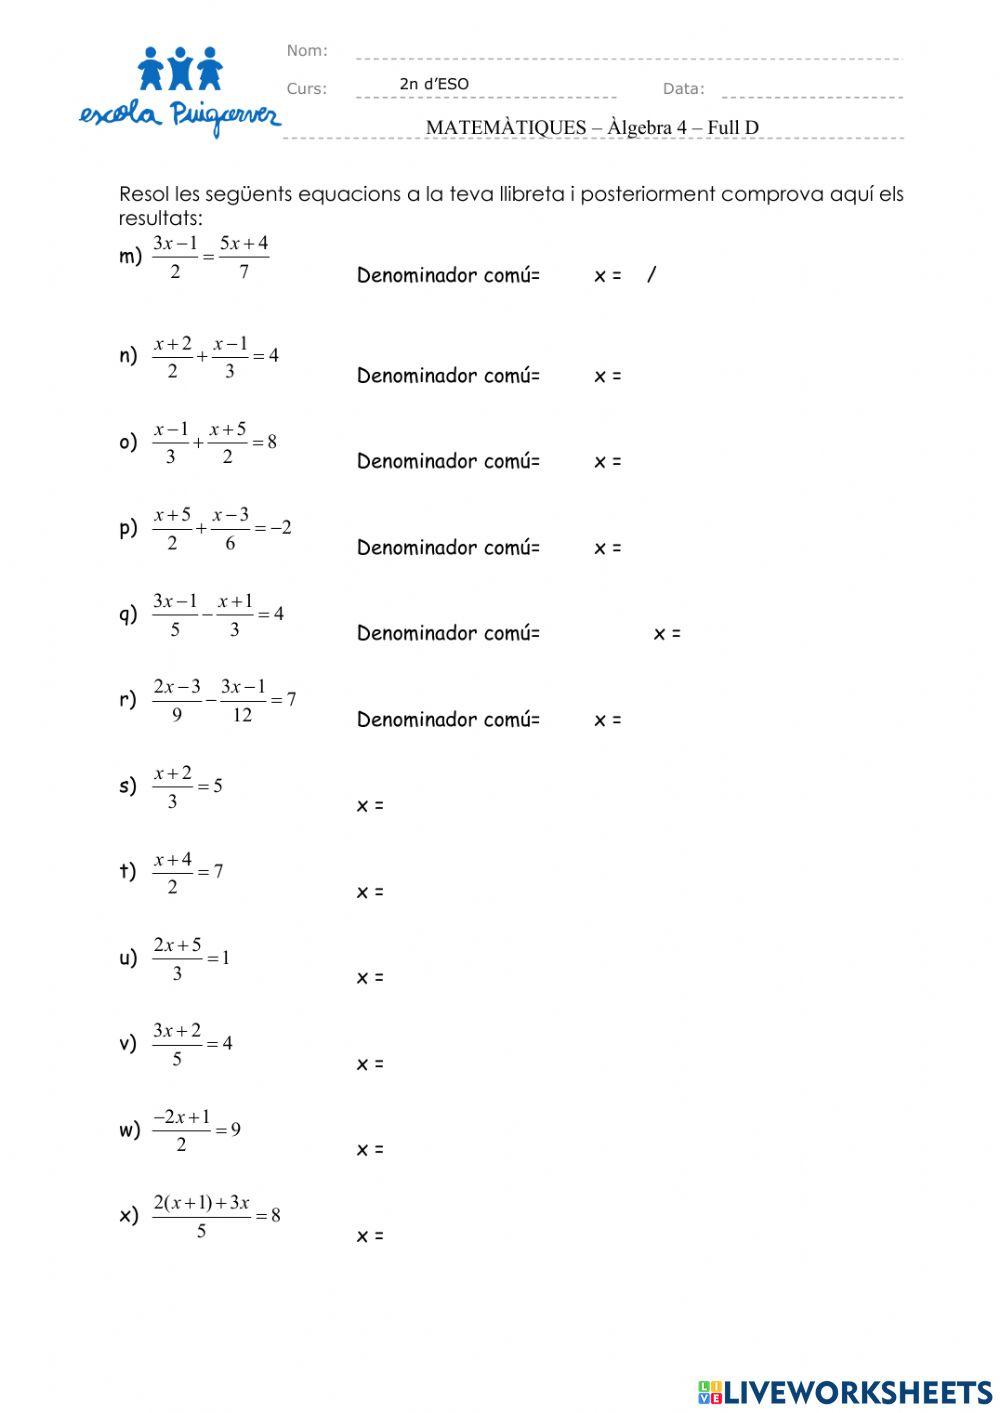 Àlgebra - Equacions 4 - Full D2